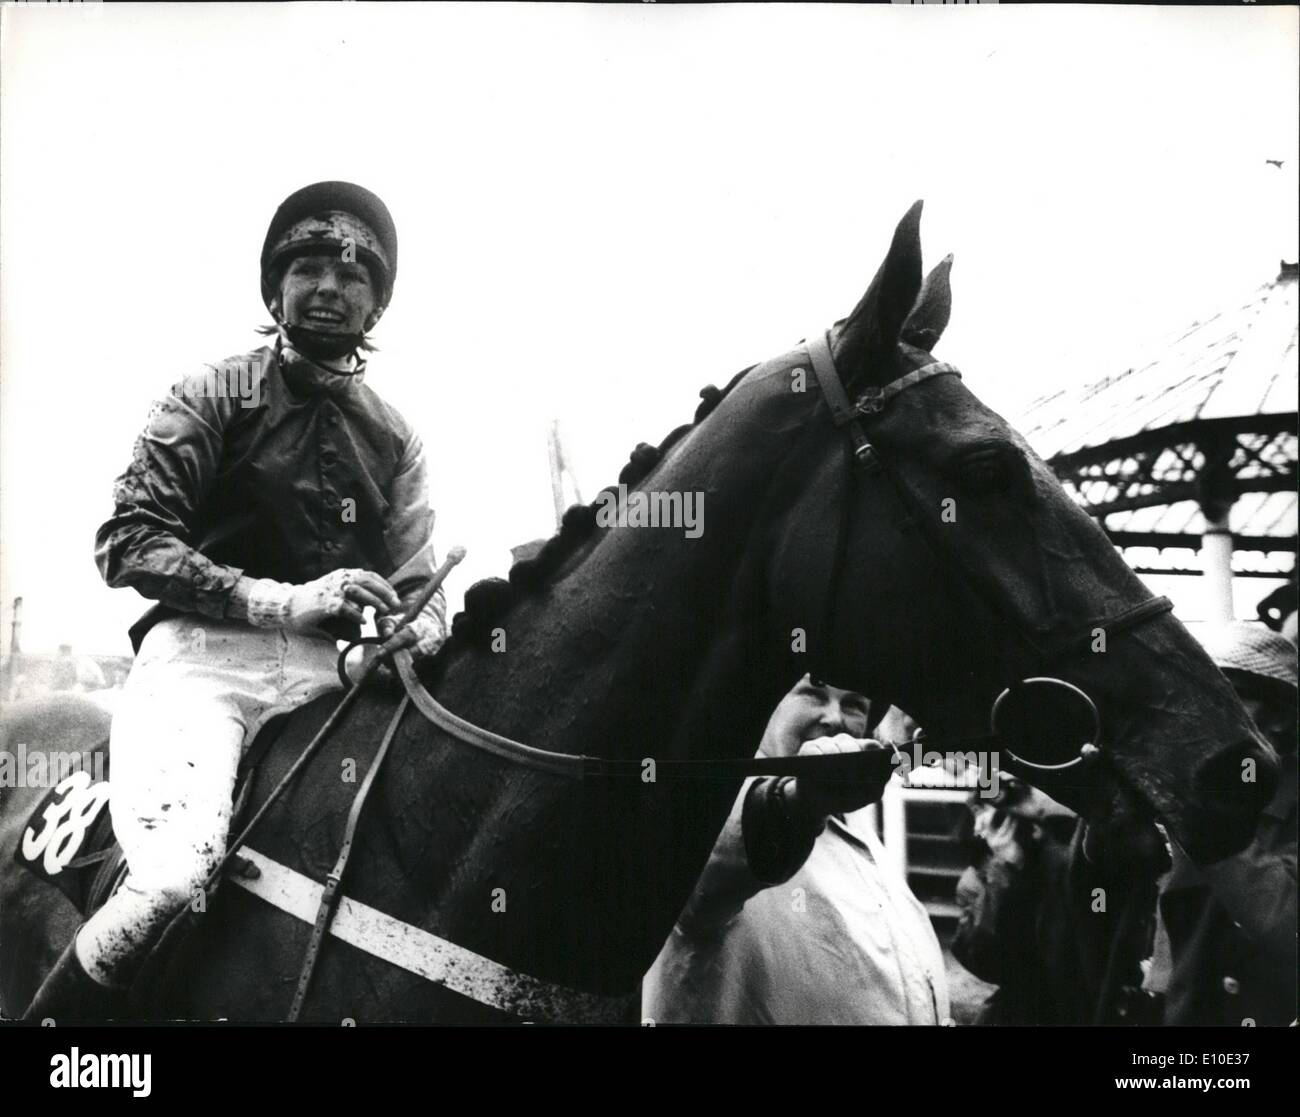 Maggio 05, 1972 - Donna piloti competere in una corsa di cavalli a Kempton Park per la prima volta in Gran Bretagna : oggi la storia è stata fatta quando Foto Stock